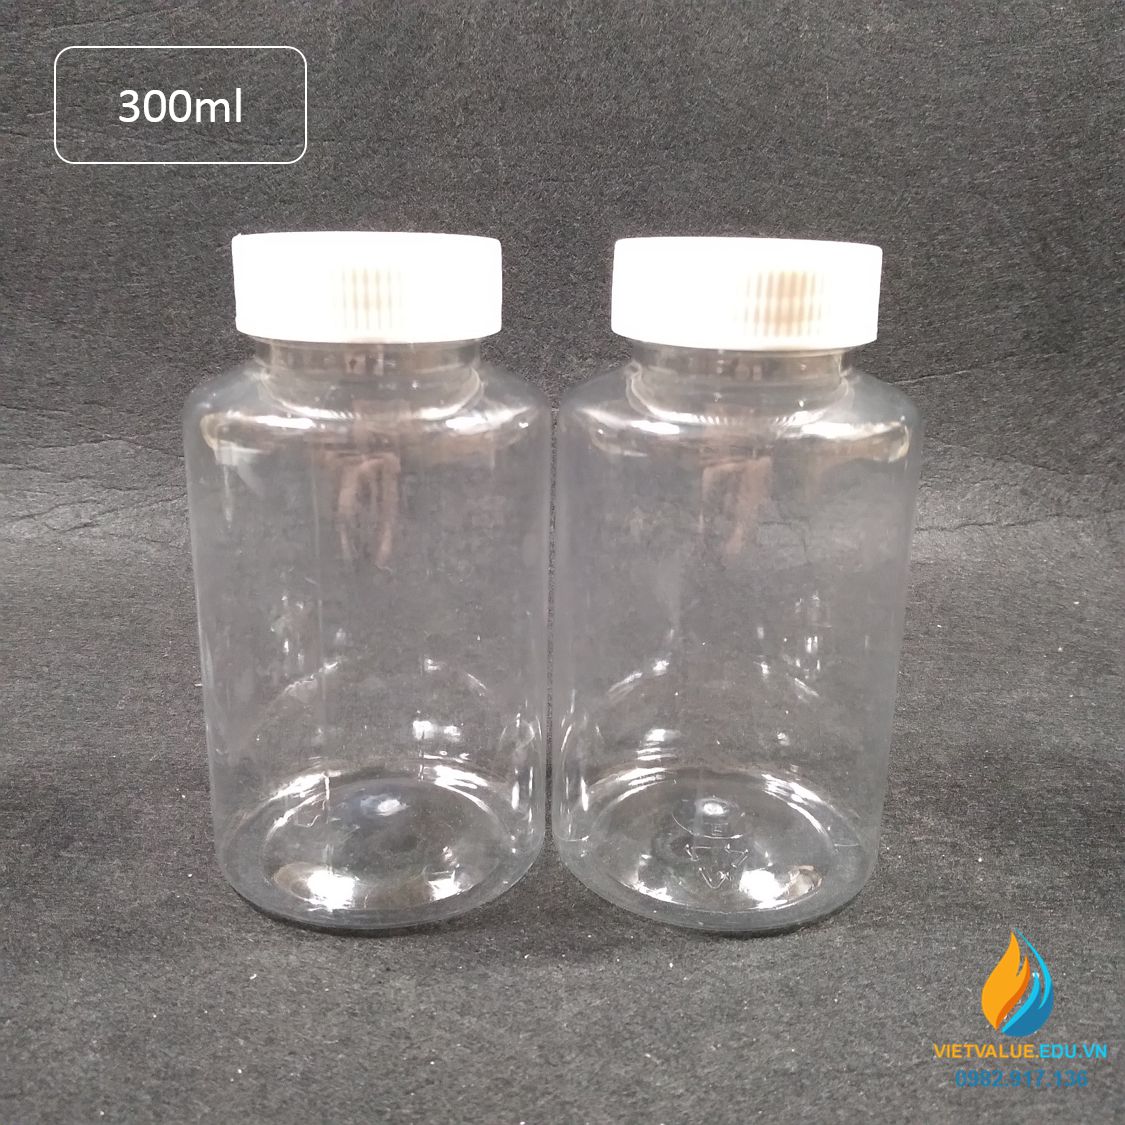 Chai nhựa PET dung tích 300ml, chai nhựa lưu mẫu chất, miệng rộng, vạch chia